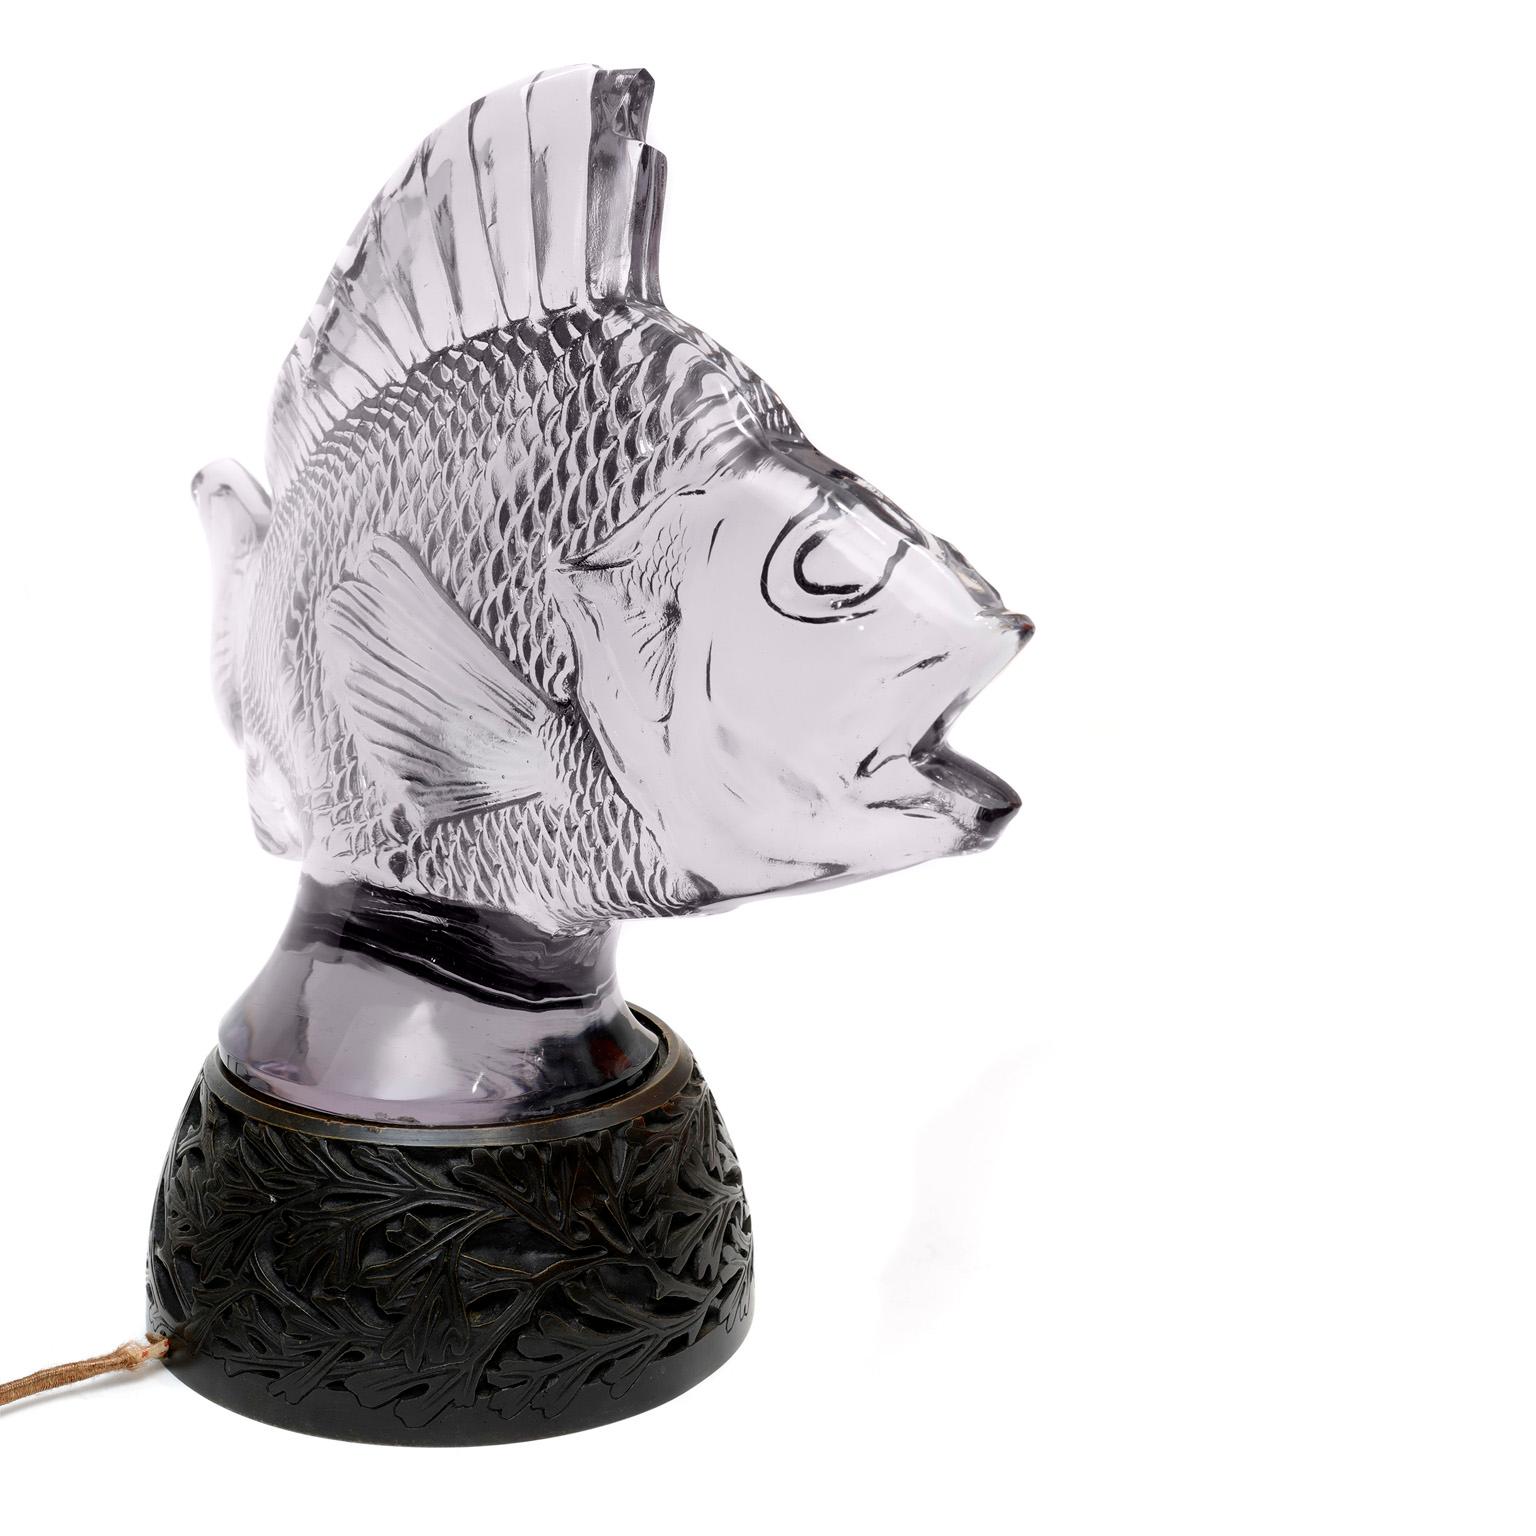 Authentische Lalique Glasfisch-Skulptur Lampe, hergestellt in Frankreich.  Verschönern Sie ein Haus am Strand,  erfreuen Sie einen begeisterten Angler oder verwöhnen Sie Ihren Lieblingsfische mit etwas Exquisitem.  Die Fischskulptur von Lalique aus